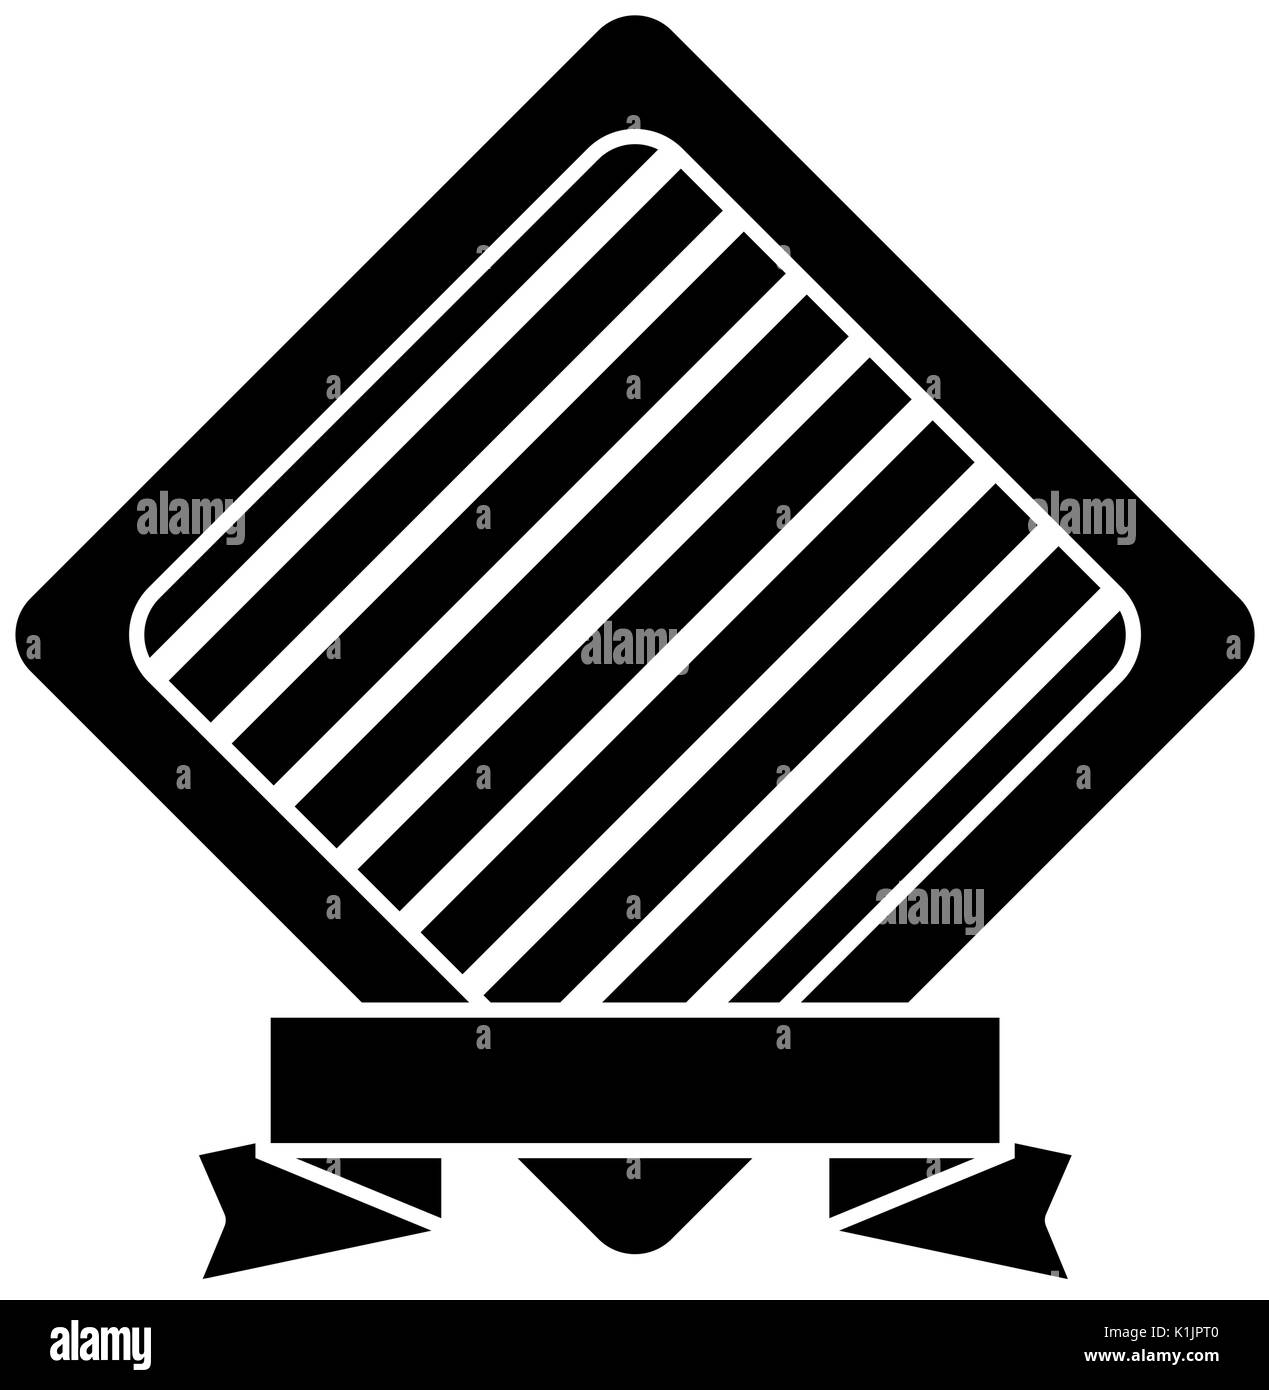 Emblem und Zierband Symbol auf weißem Hintergrund Vector Illustration Stock Vektor